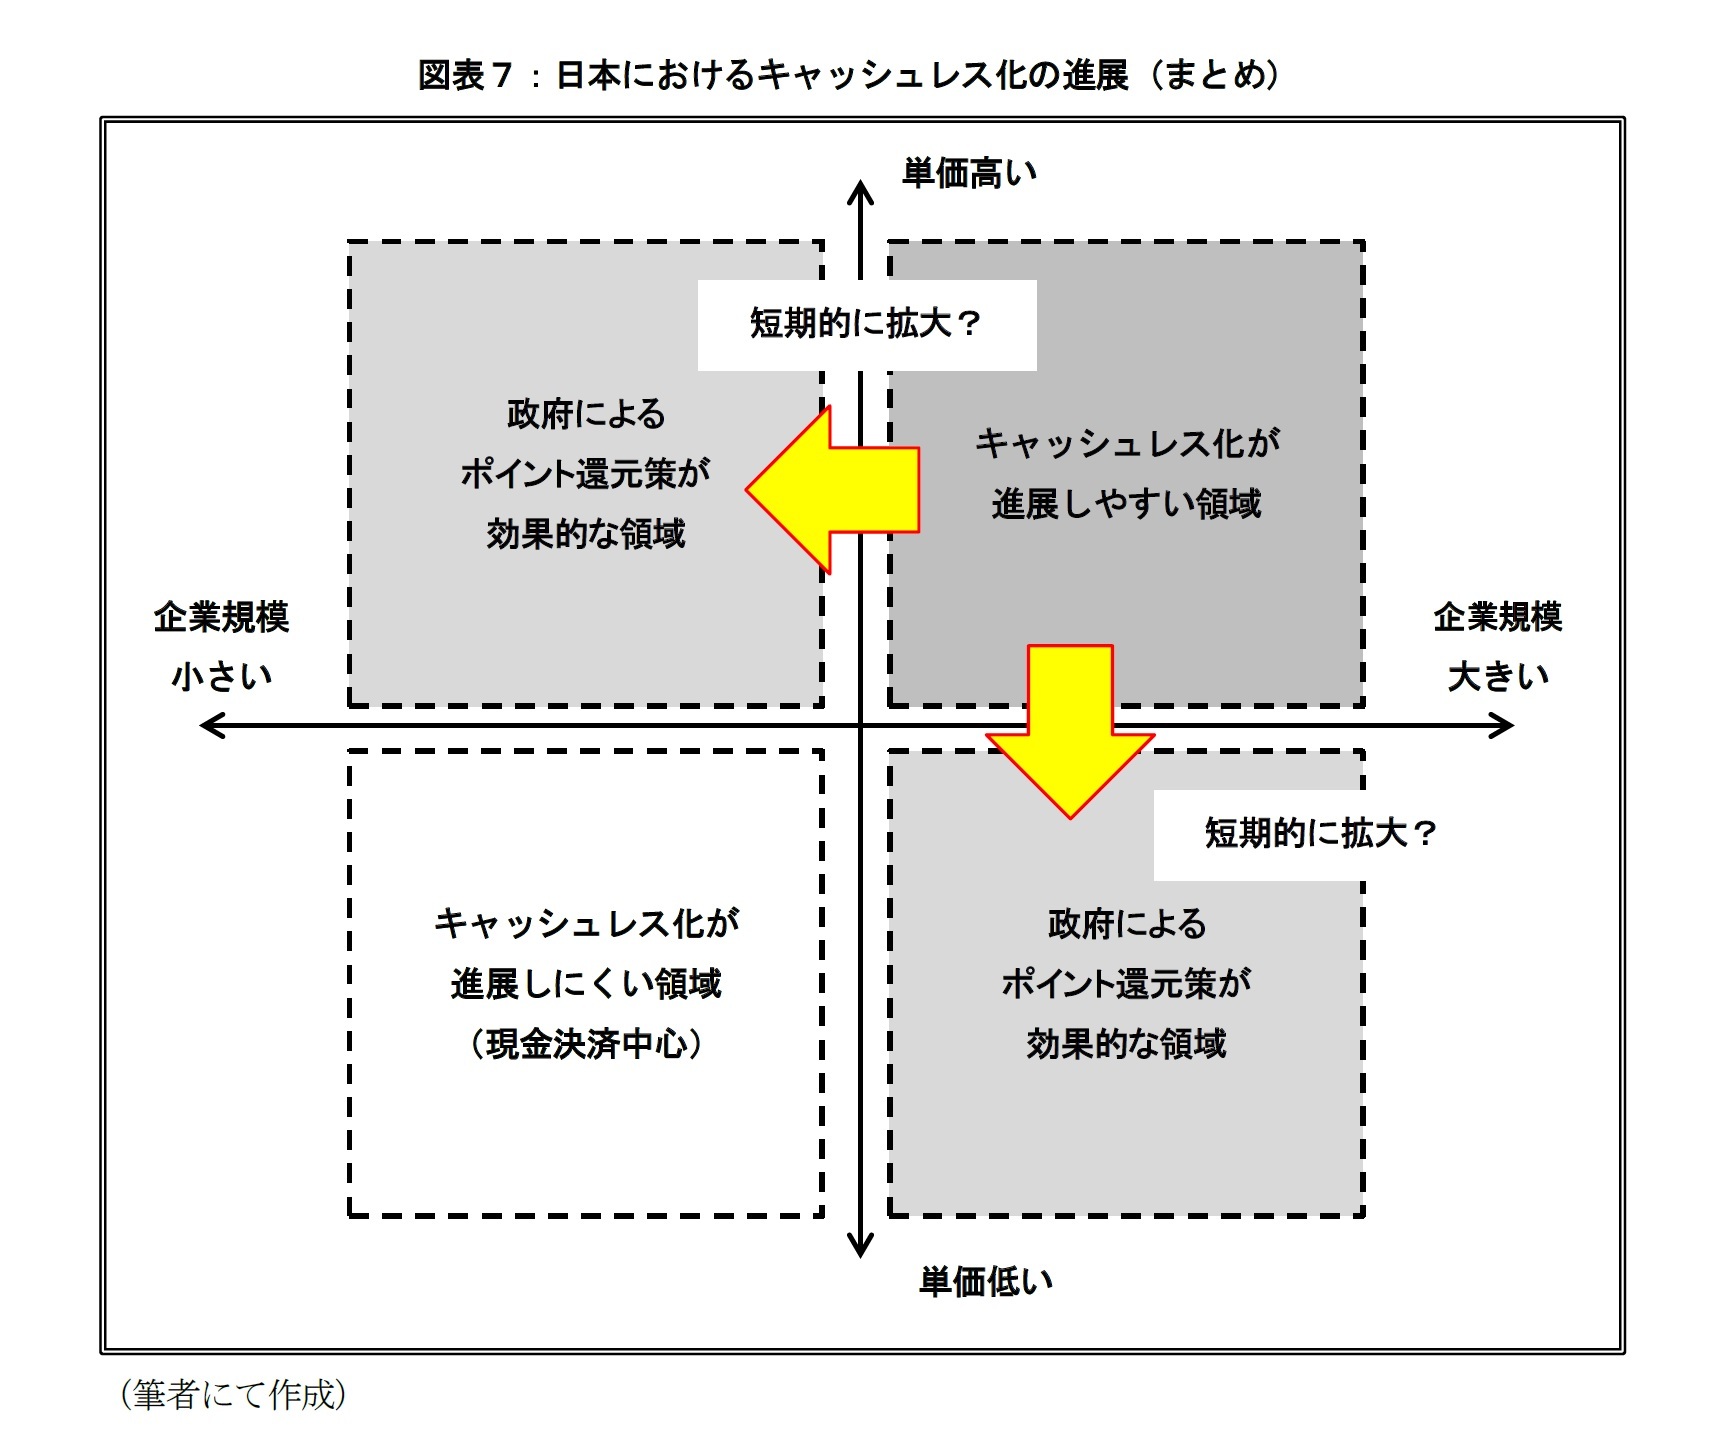 図表７：日本におけるキャッシュレス化の進展（まとめ）